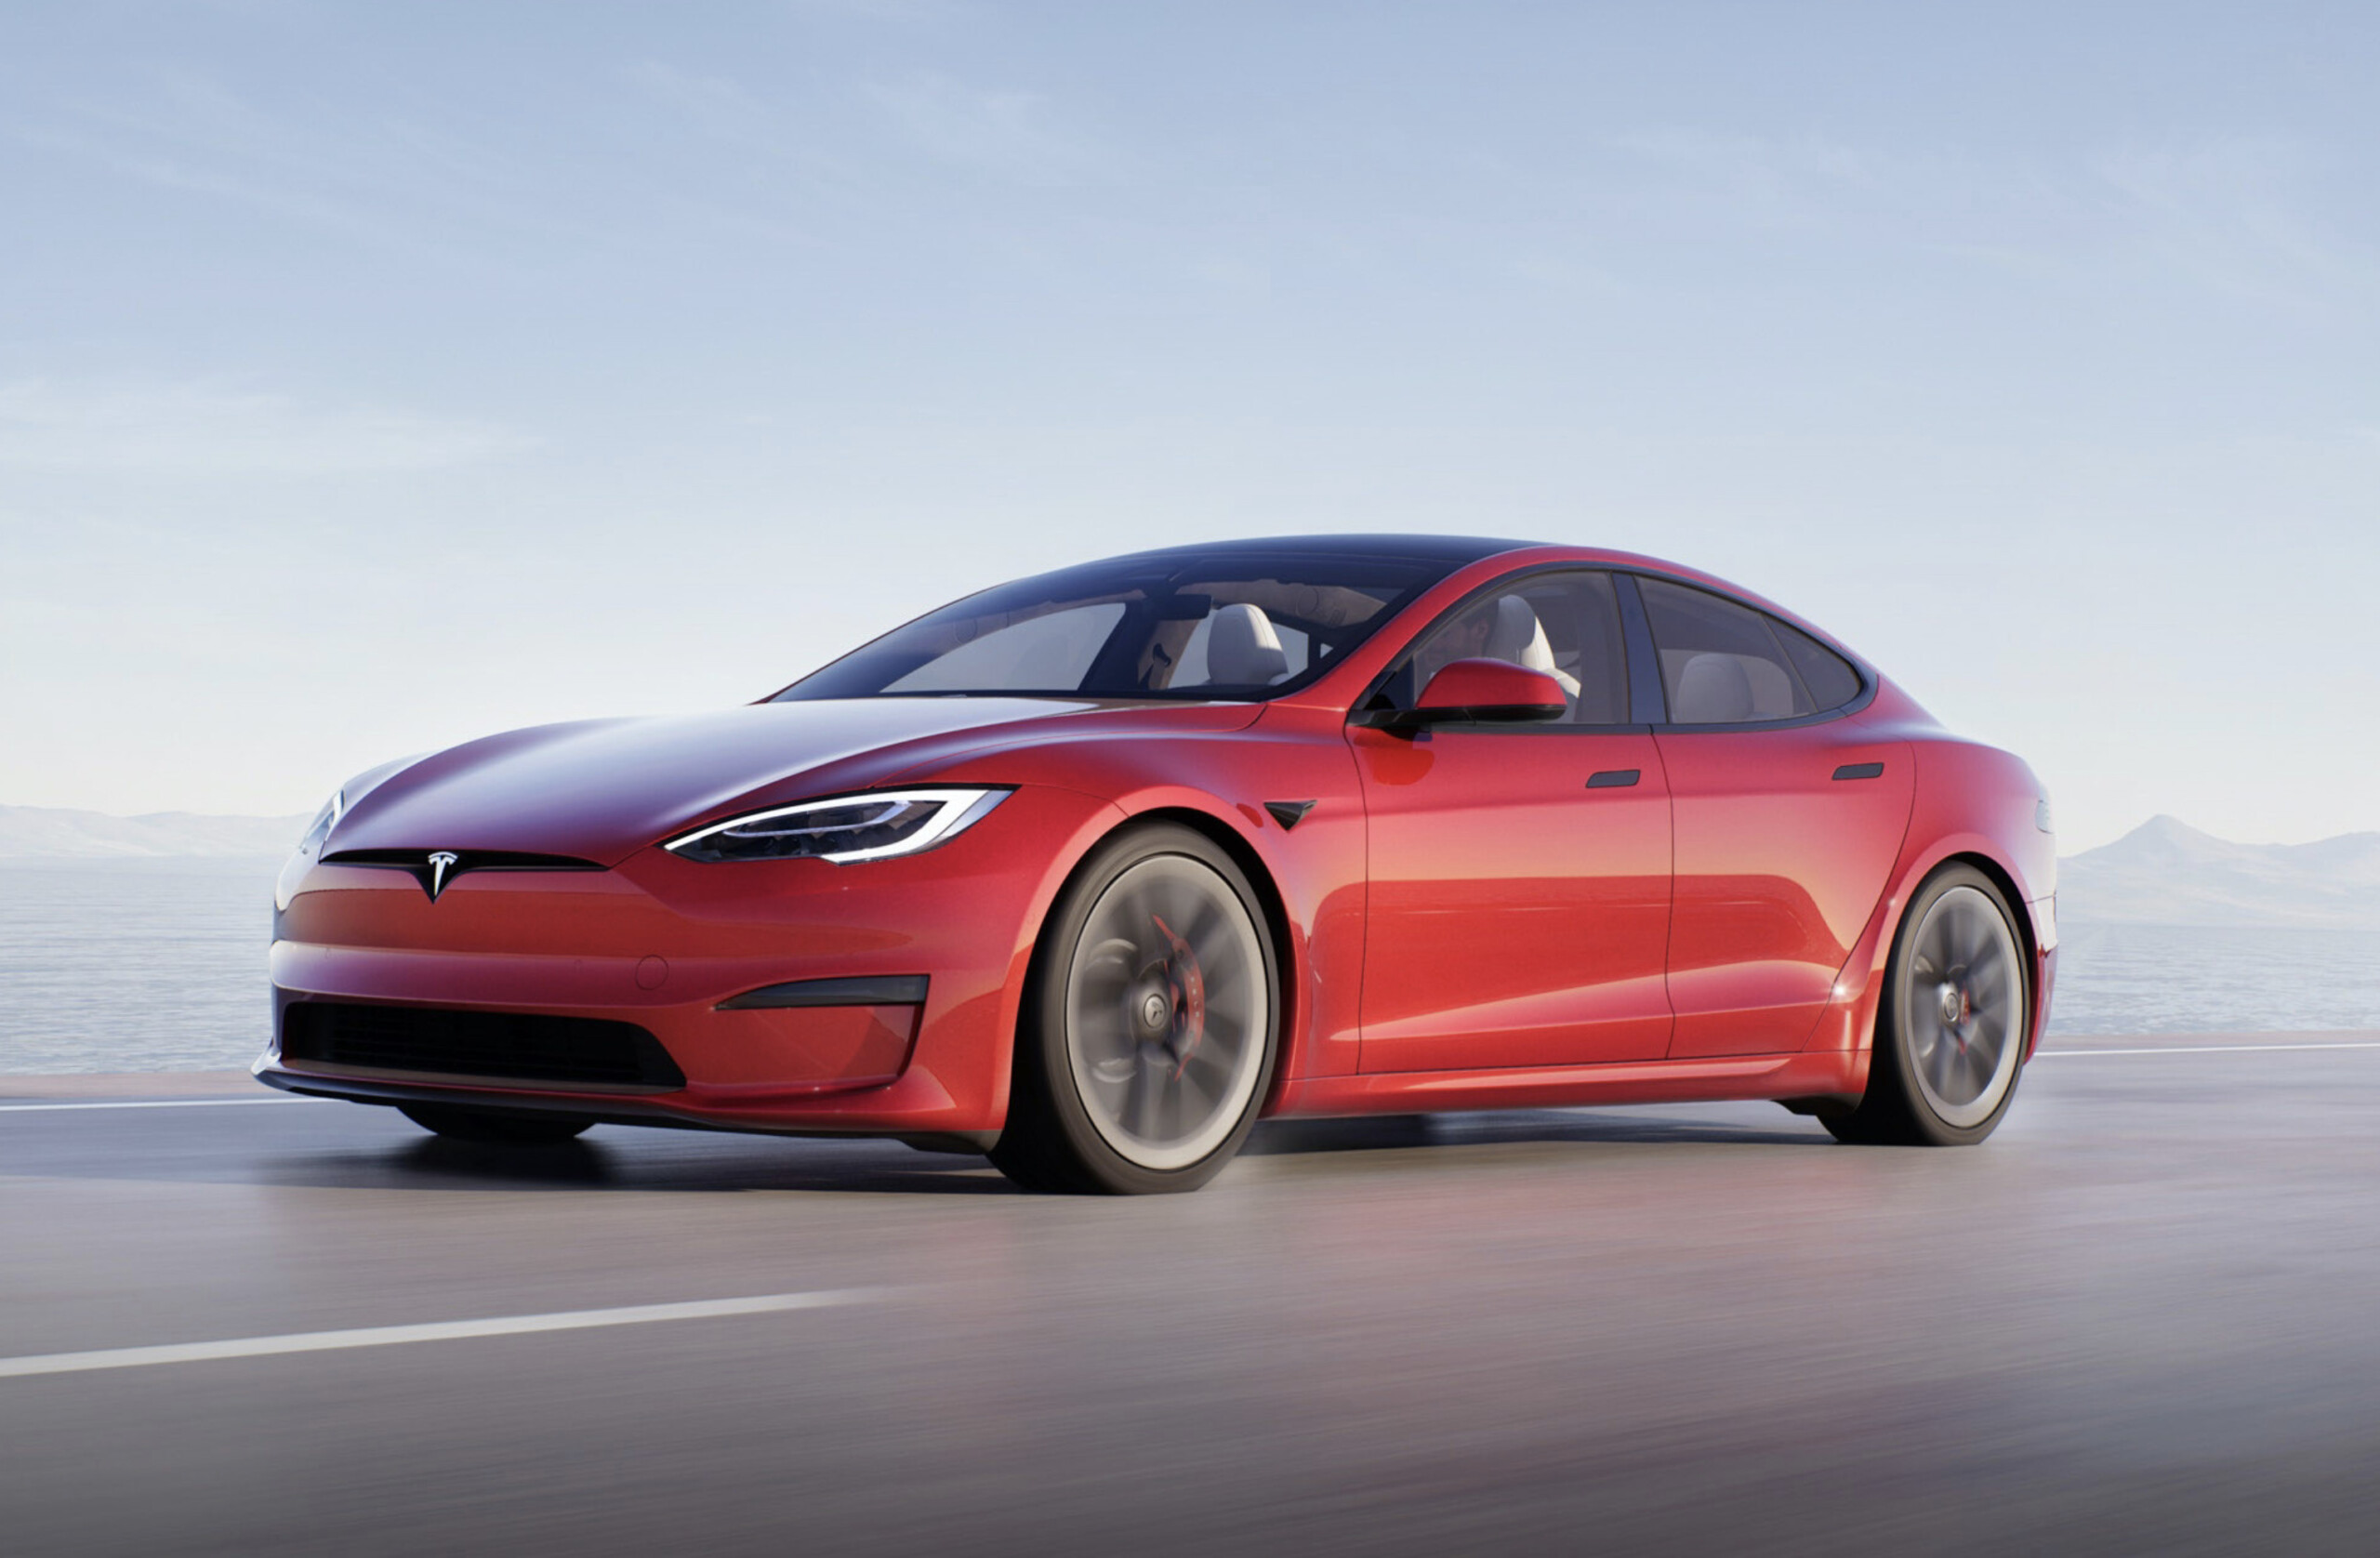 La Tesla Model S Plaid pulvérise sa vitesse maximale grâce à des